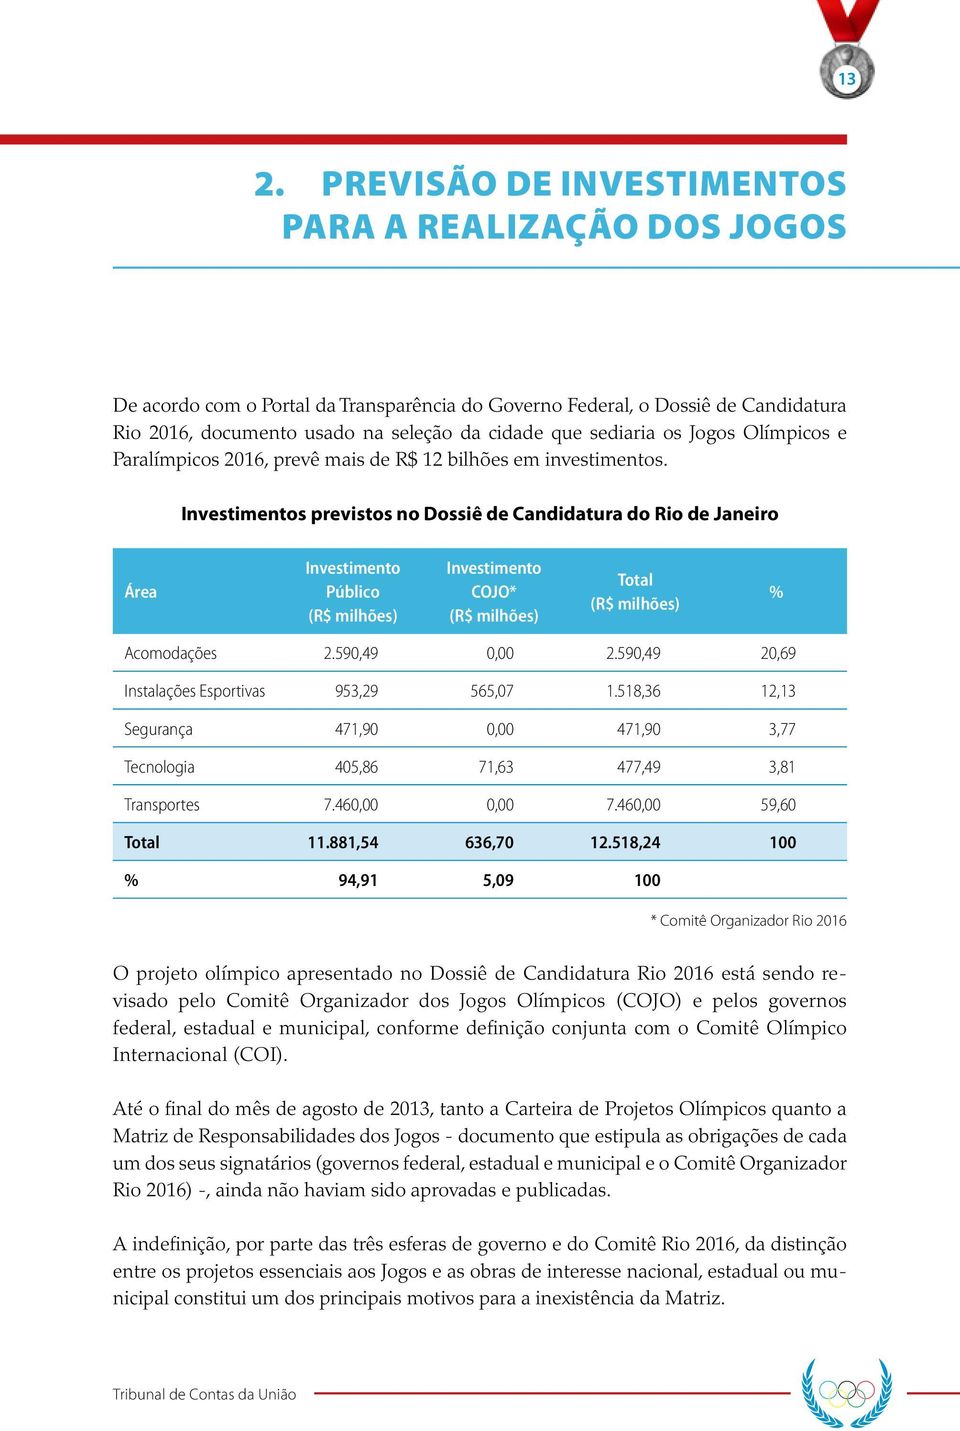 Investimentos previstos no Dossiê de Candidatura do Rio de Janeiro Área Investimento Público (R$ milhões) Investimento COJO* (R$ milhões) Total (R$ milhões) % Acomodações 2.590,49 0,00 2.